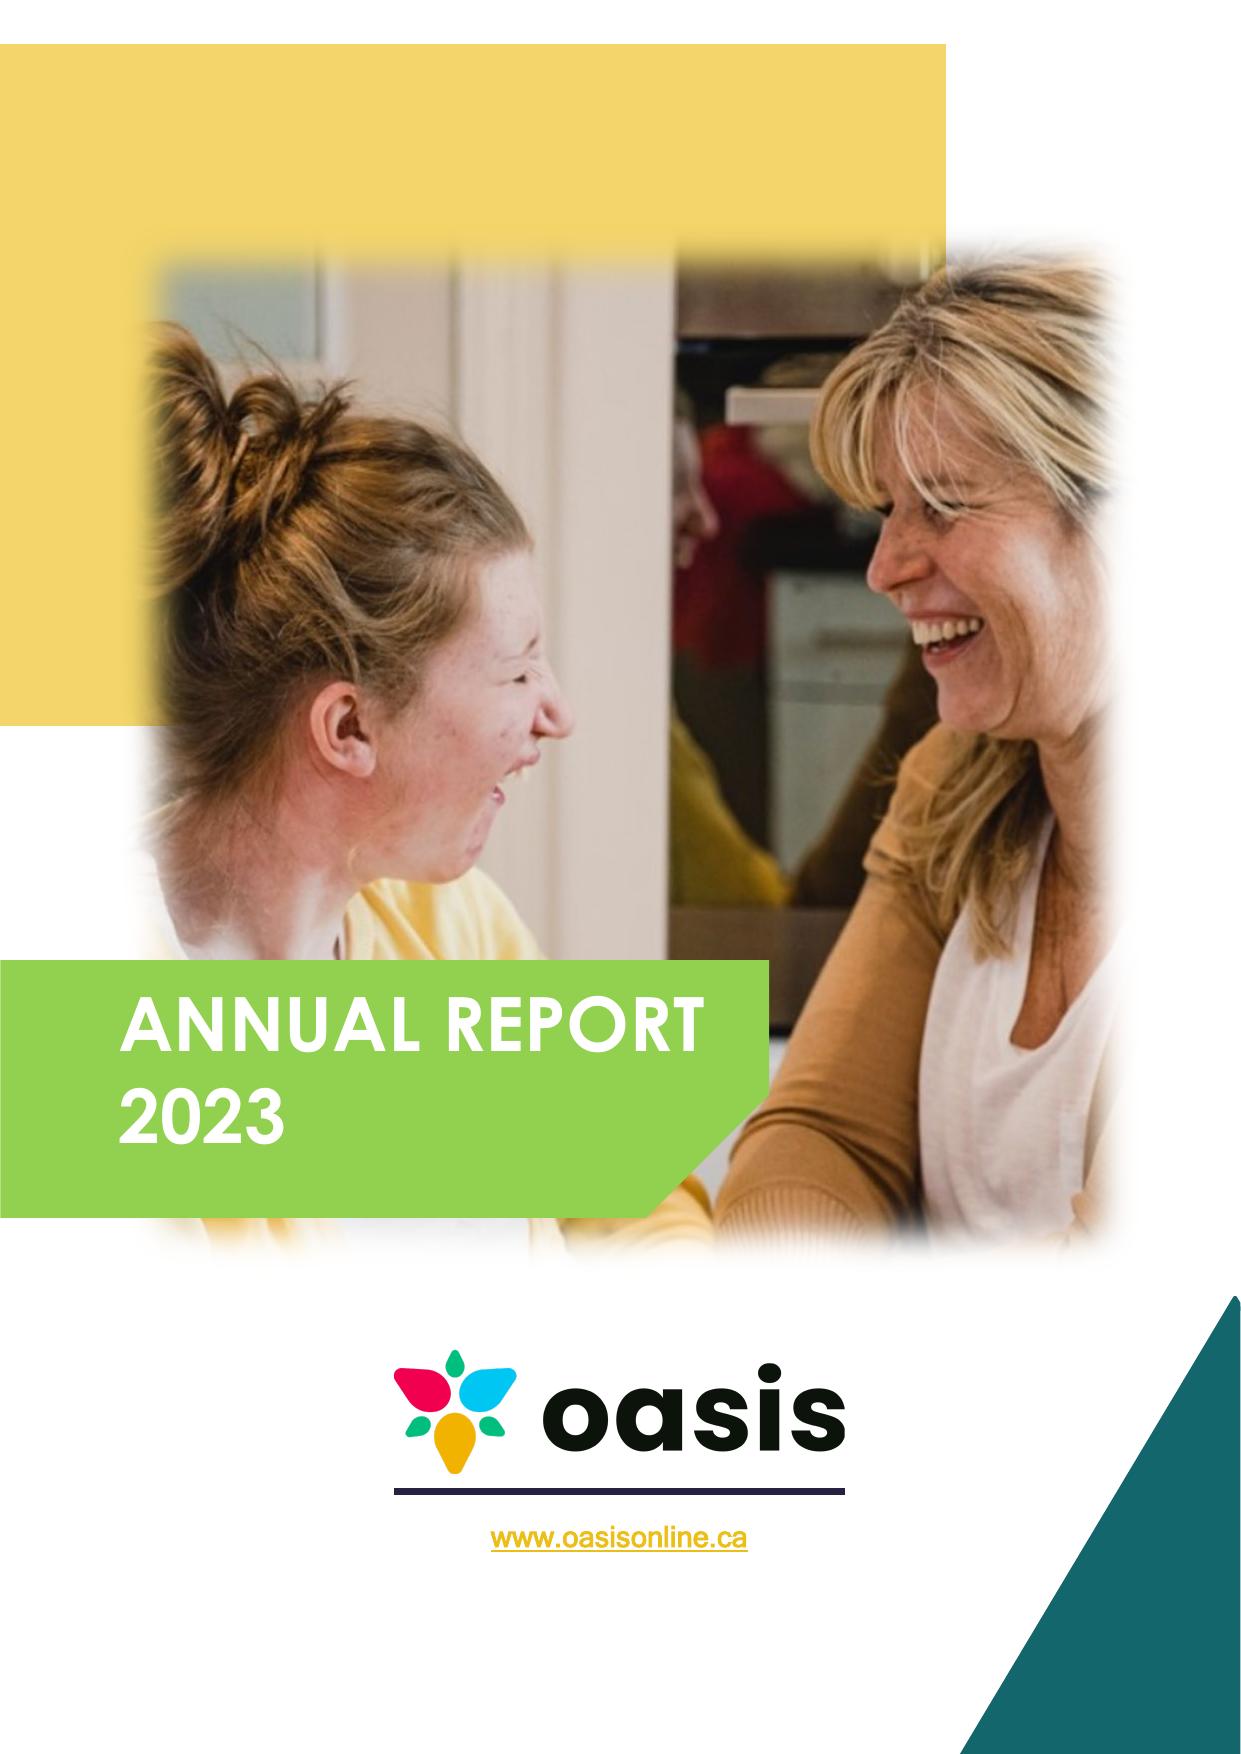 OASISONLINE 2023 Annual Report